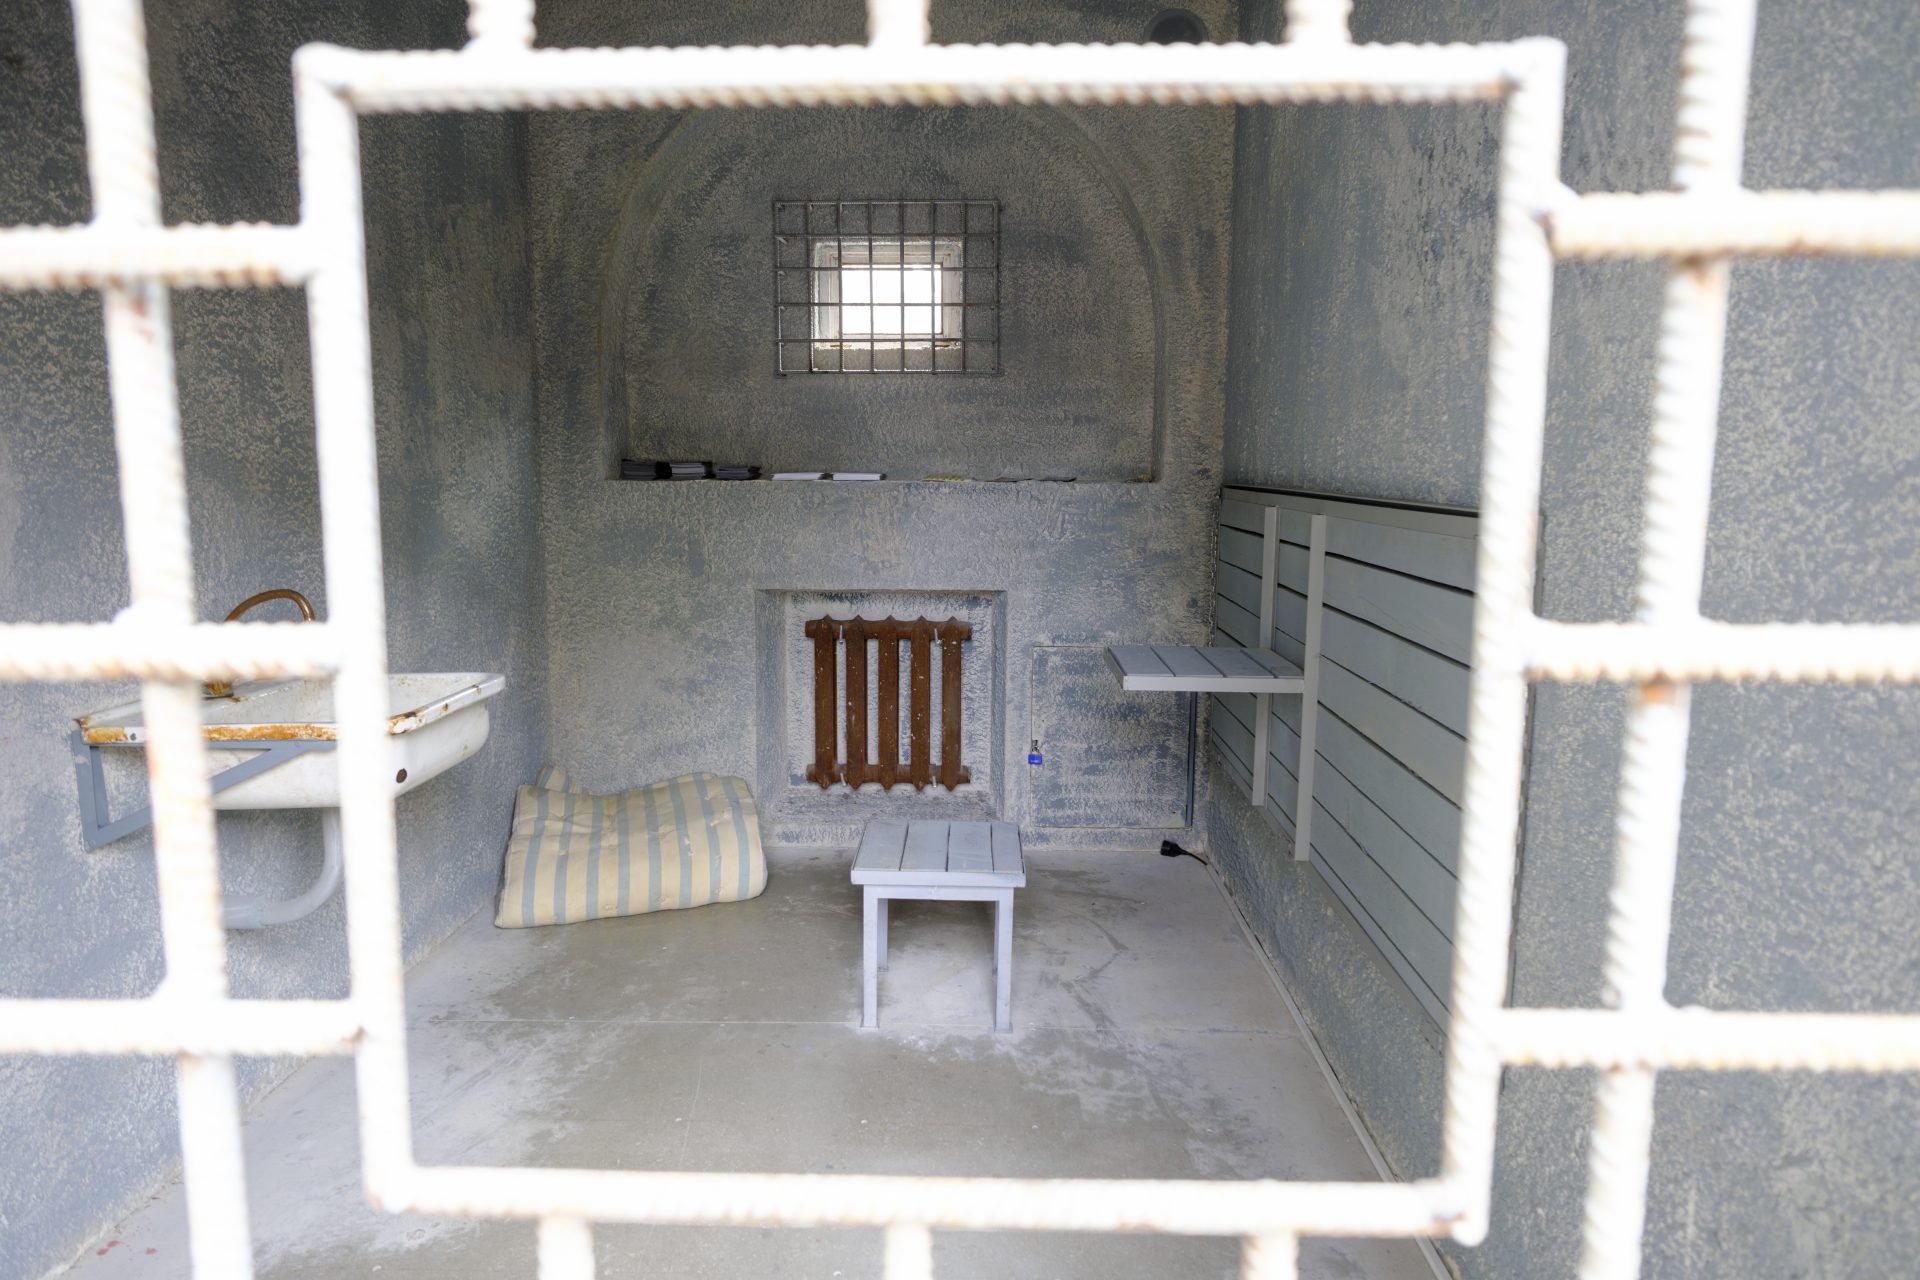 Retenido en una celda de castigo y sin comida